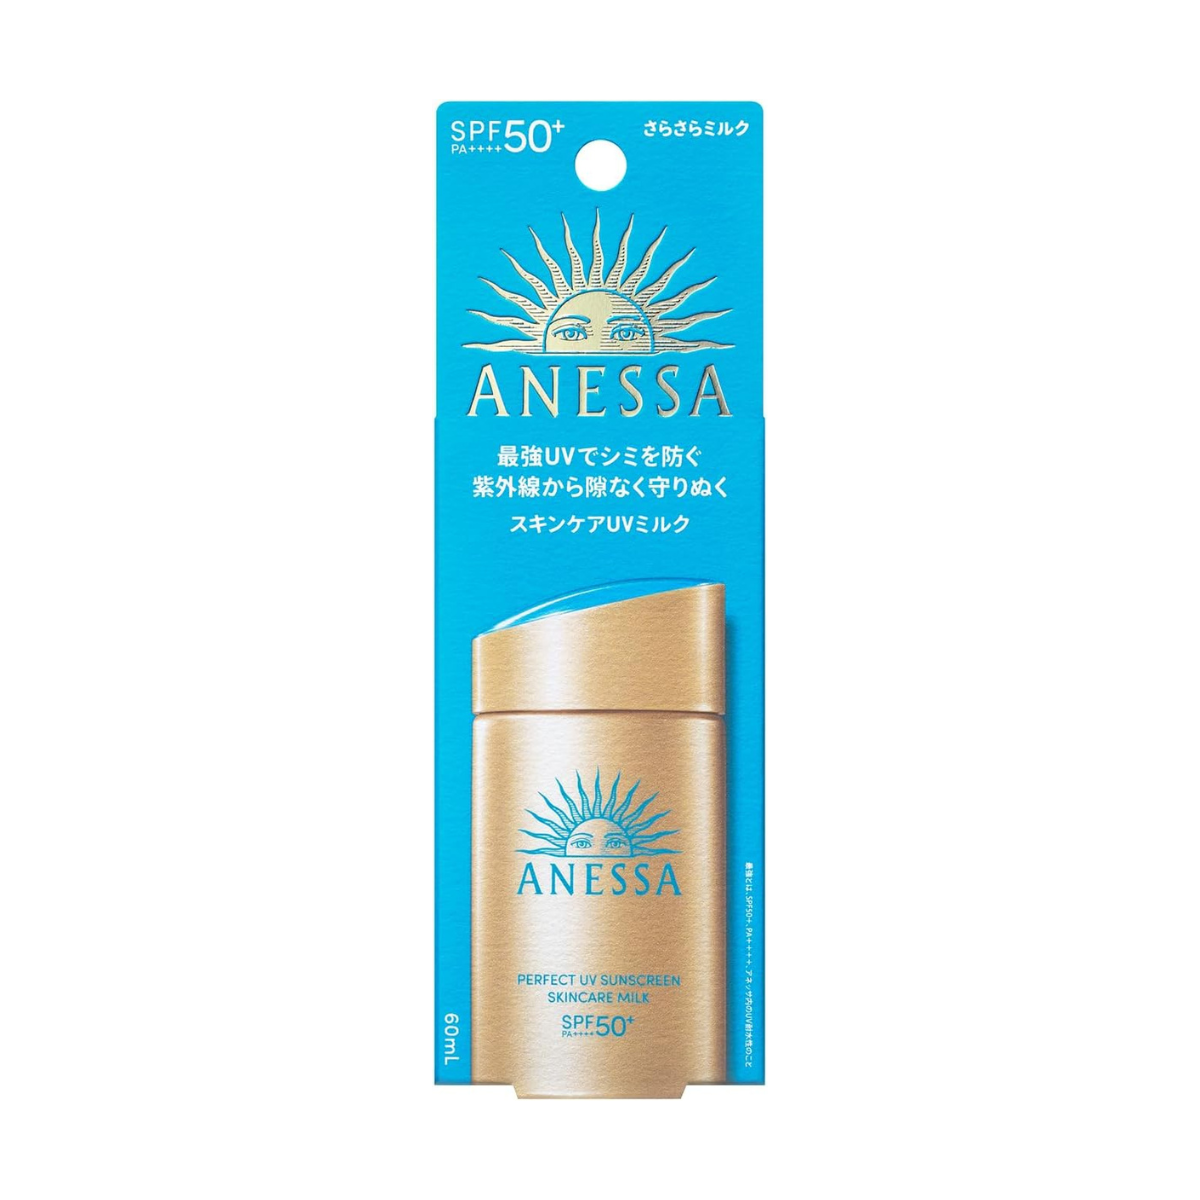 ANESSA Perfect UV Sunscreen Skincare Milk SPF 50+ PA++++